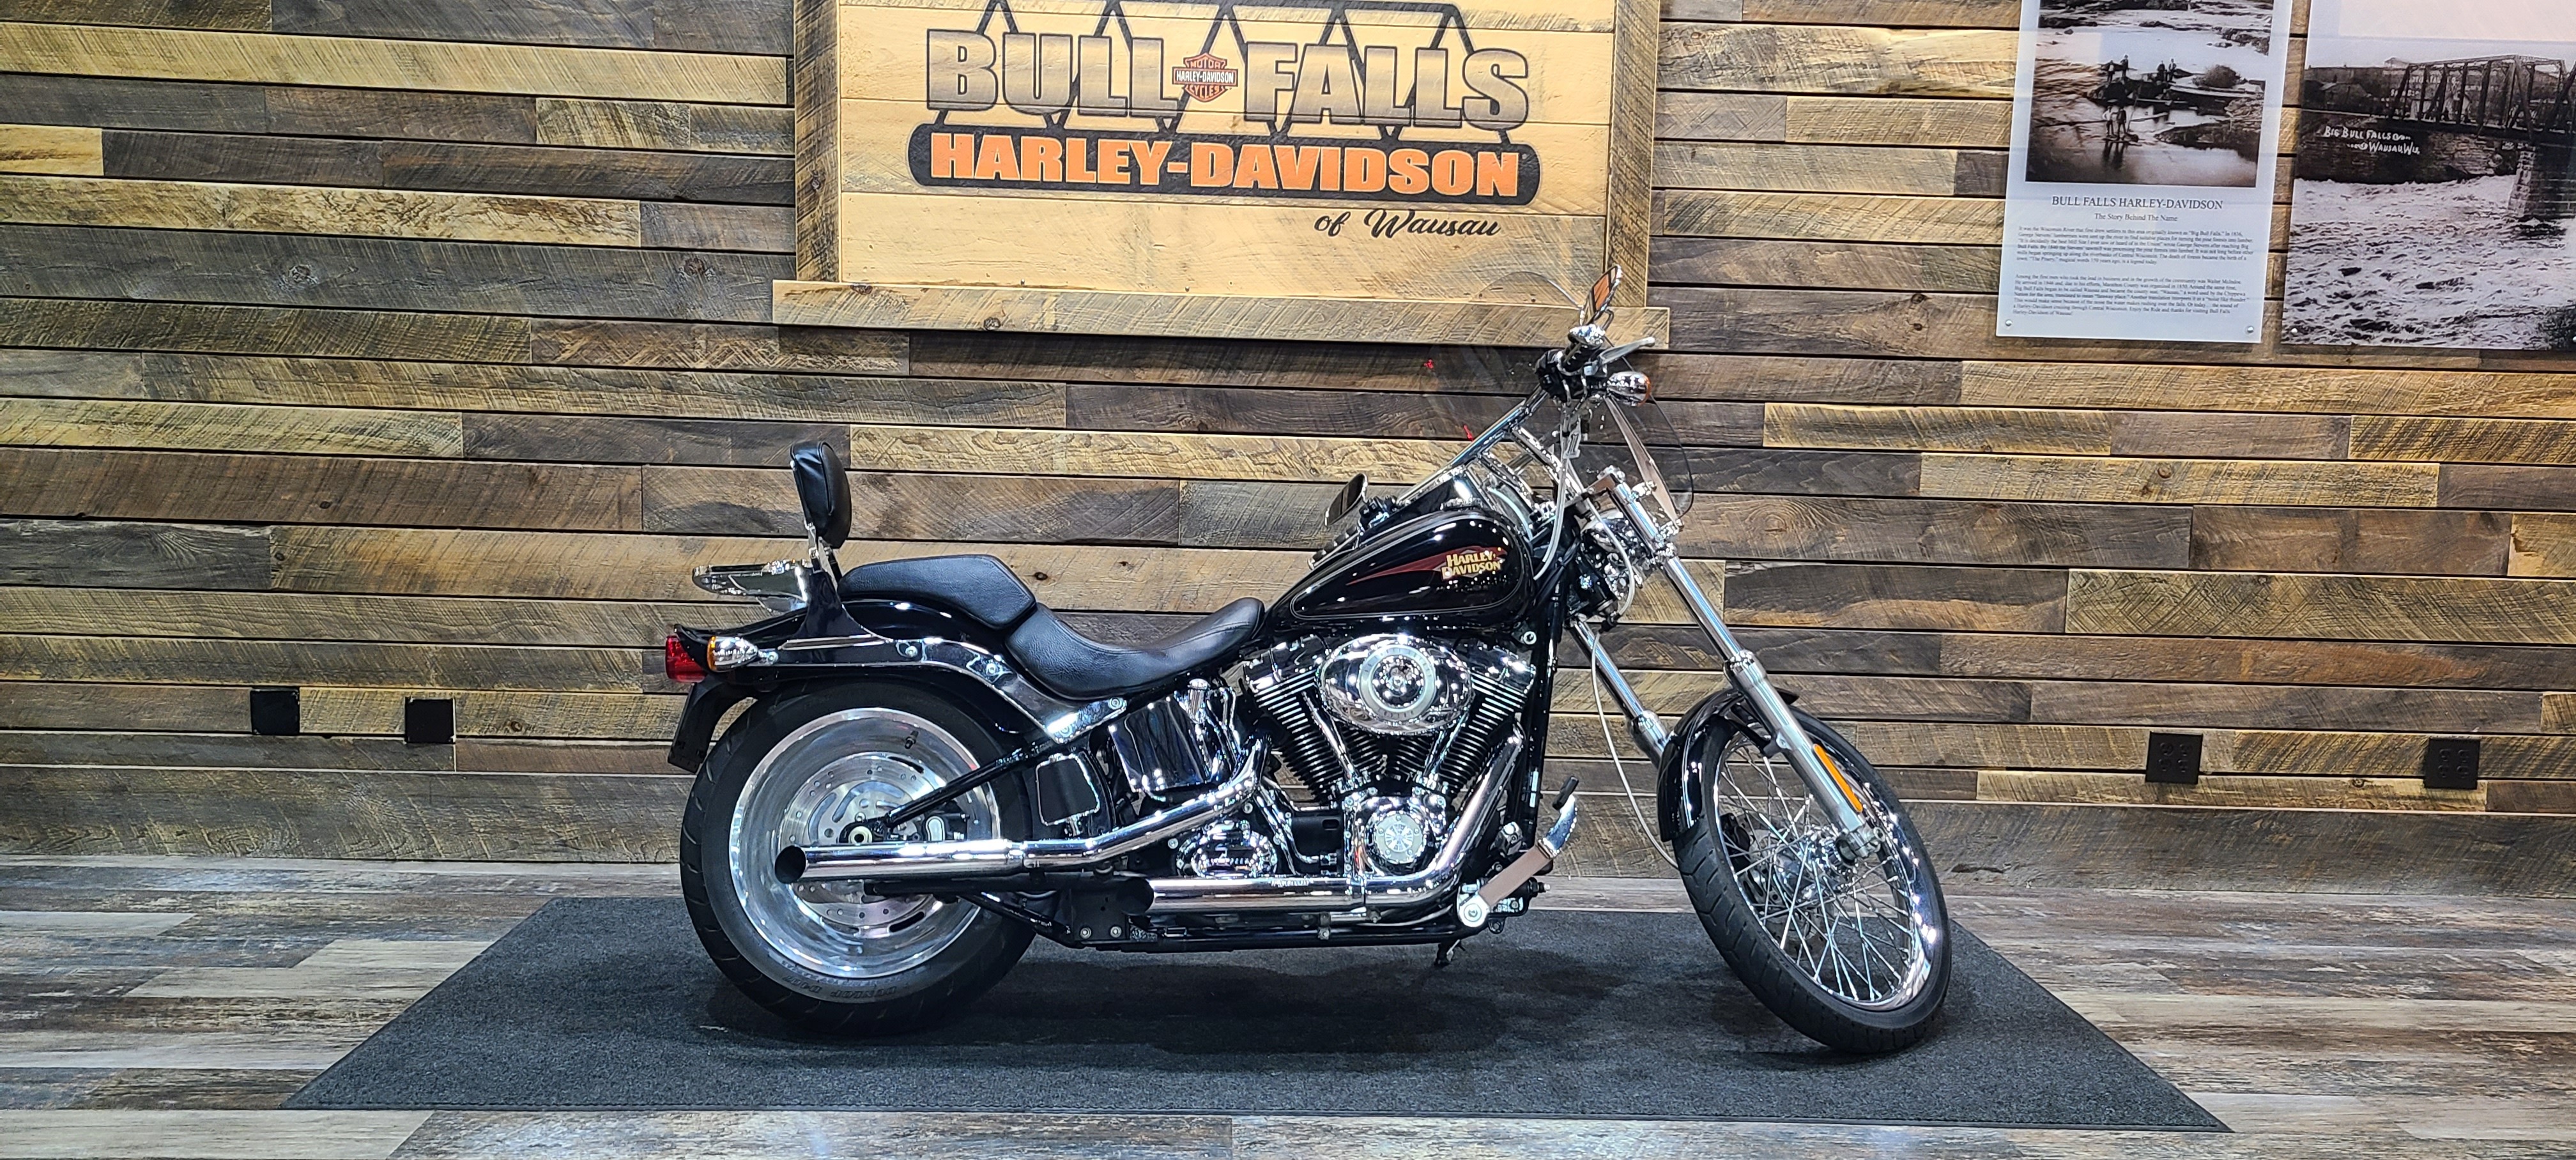 2010 Harley-Davidson Softail Custom at Bull Falls Harley-Davidson